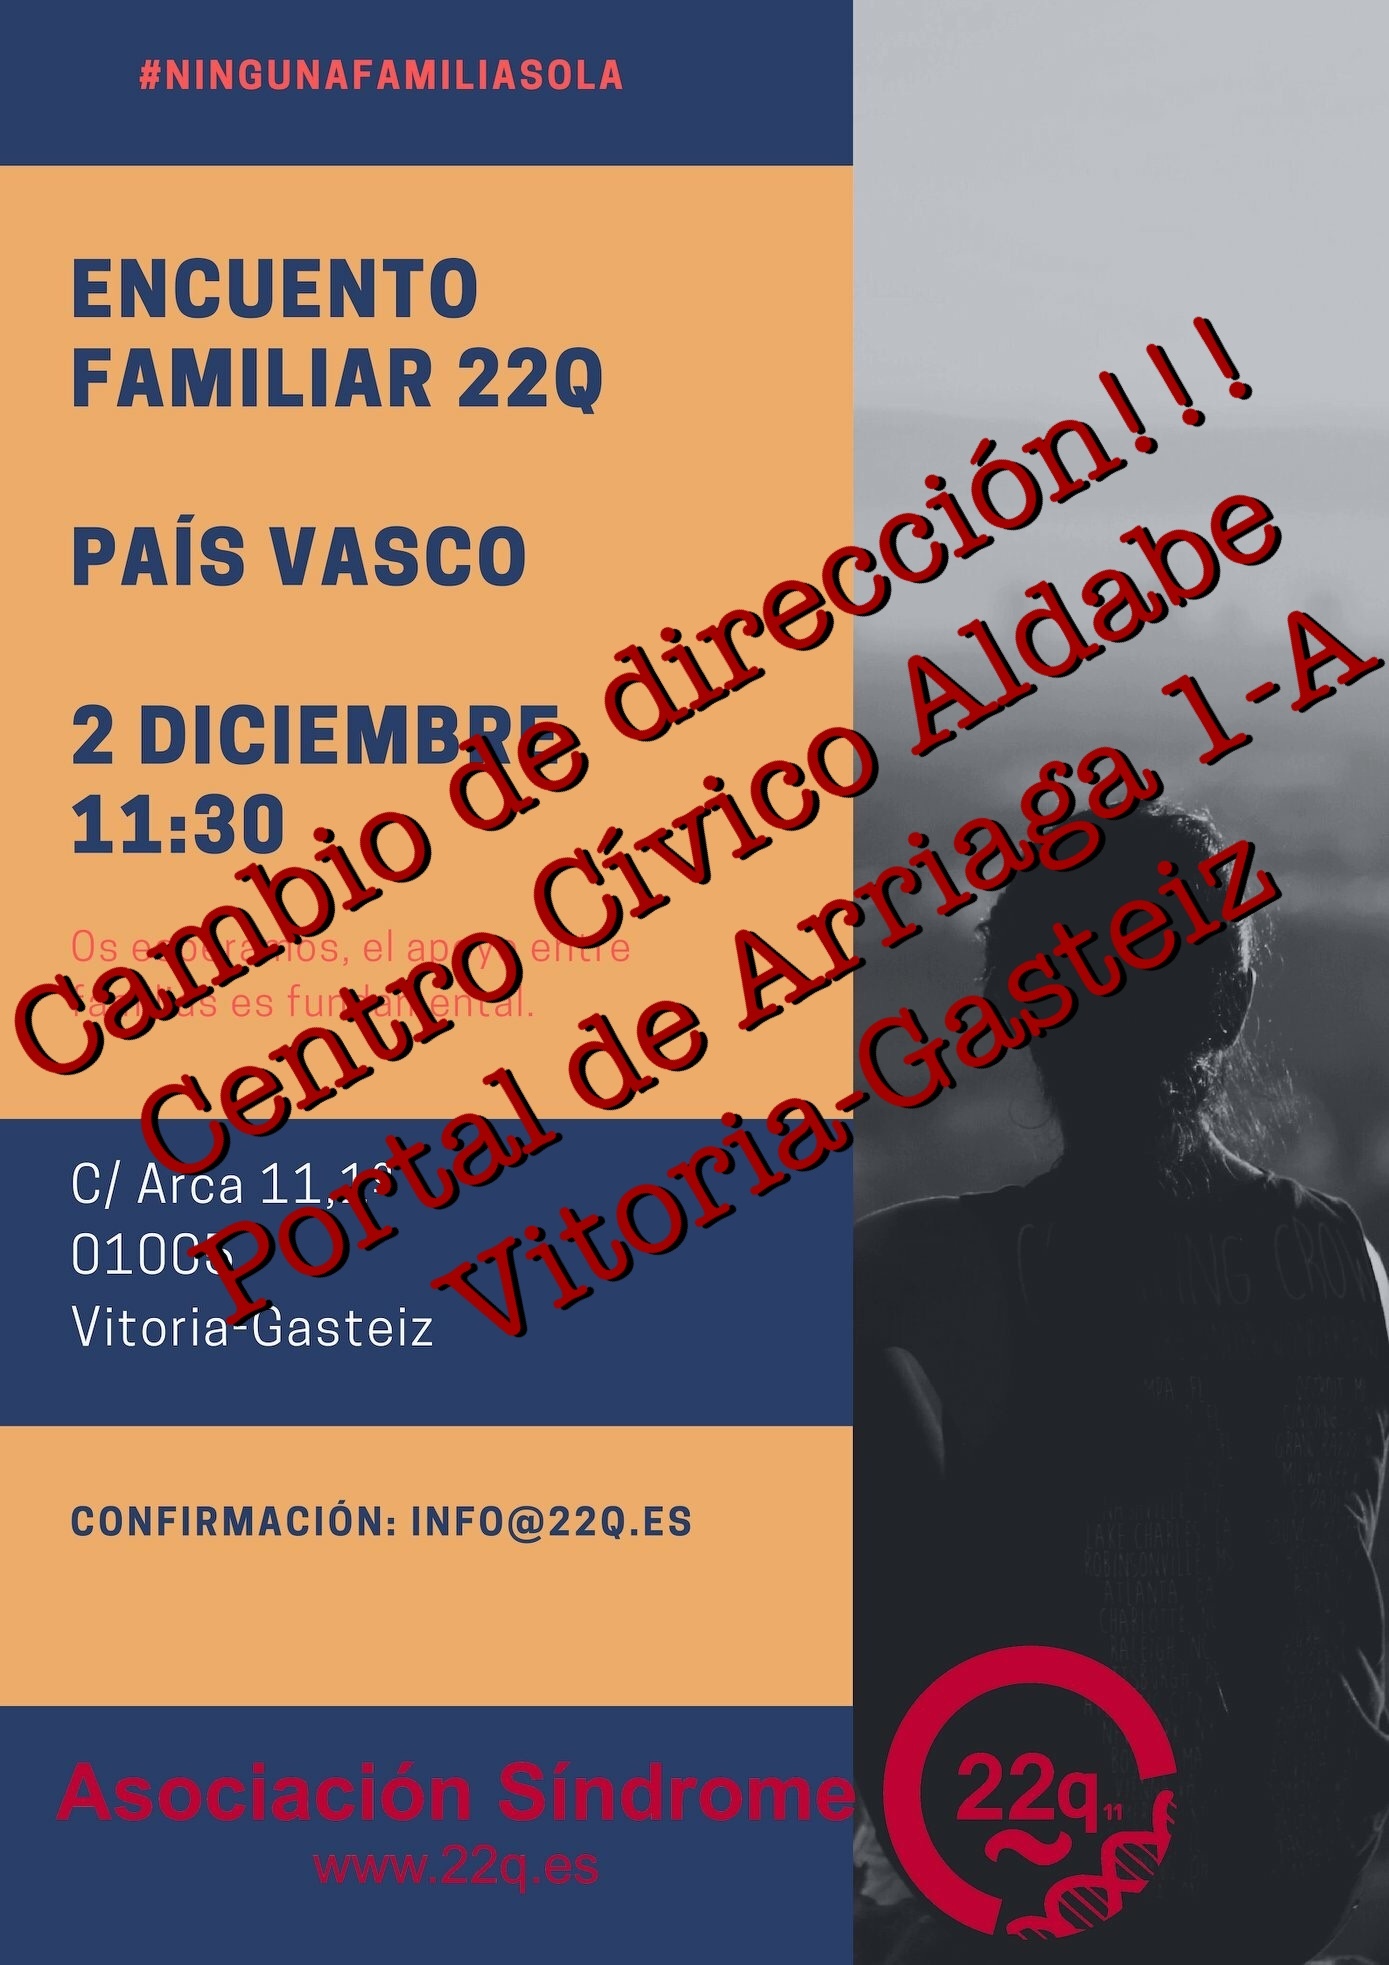 Encuentro Familiar 22q en el País Vasco